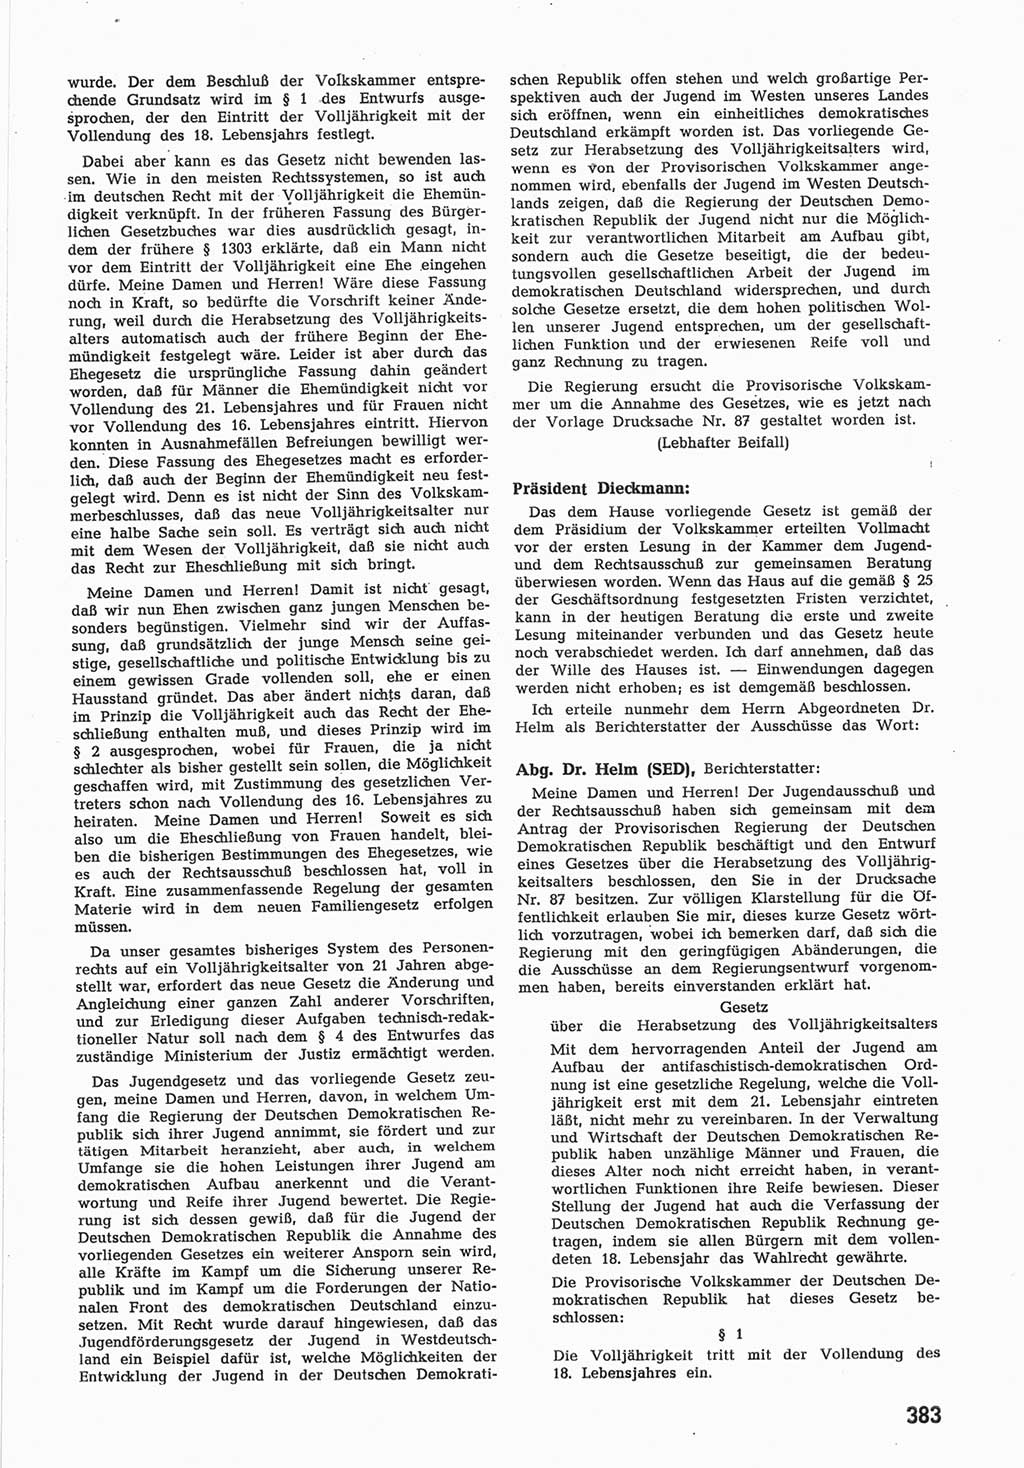 Provisorische Volkskammer (VK) der Deutschen Demokratischen Republik (DDR) 1949-1950, Dokument 401 (Prov. VK DDR 1949-1950, Dok. 401)